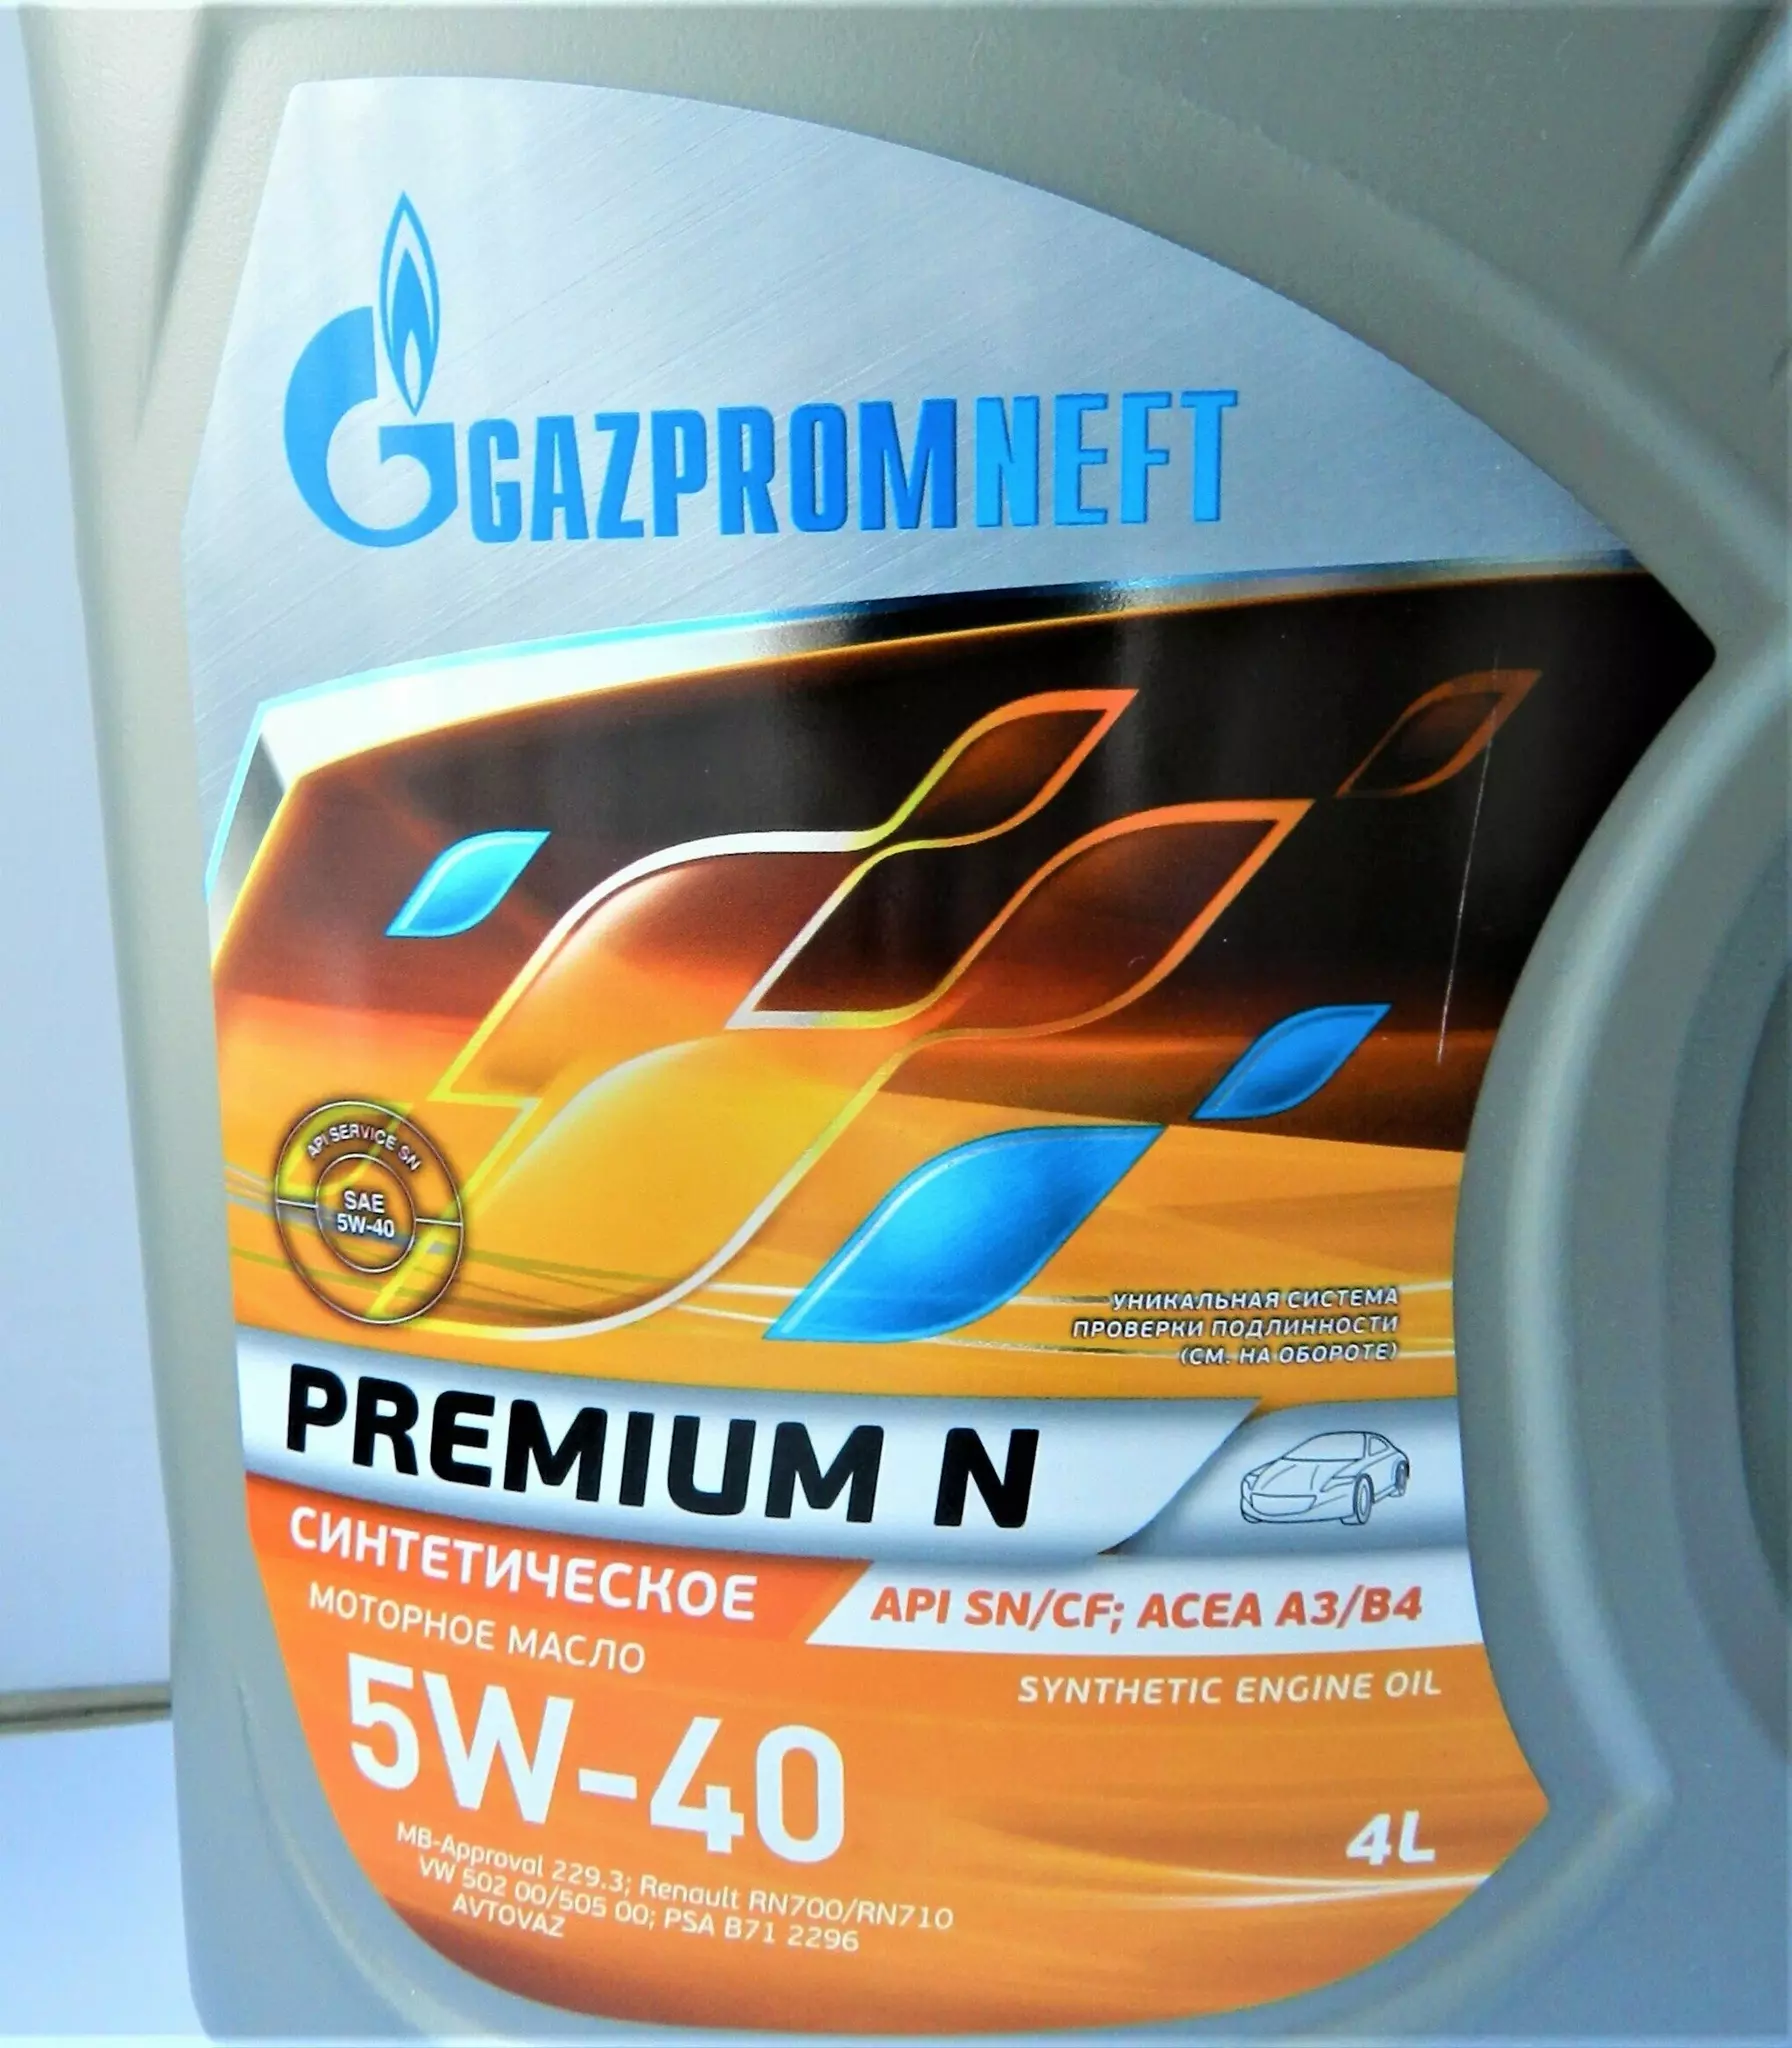 Моторное масло premium n 5w 40. Gazpromneft Premium n 5w-40. Premium n5w40 4л. Масло Premium n 5w-40 4л Gazpromneft. Gazpromneft масло Premium n 5w-40 4л ЕОМ номер.